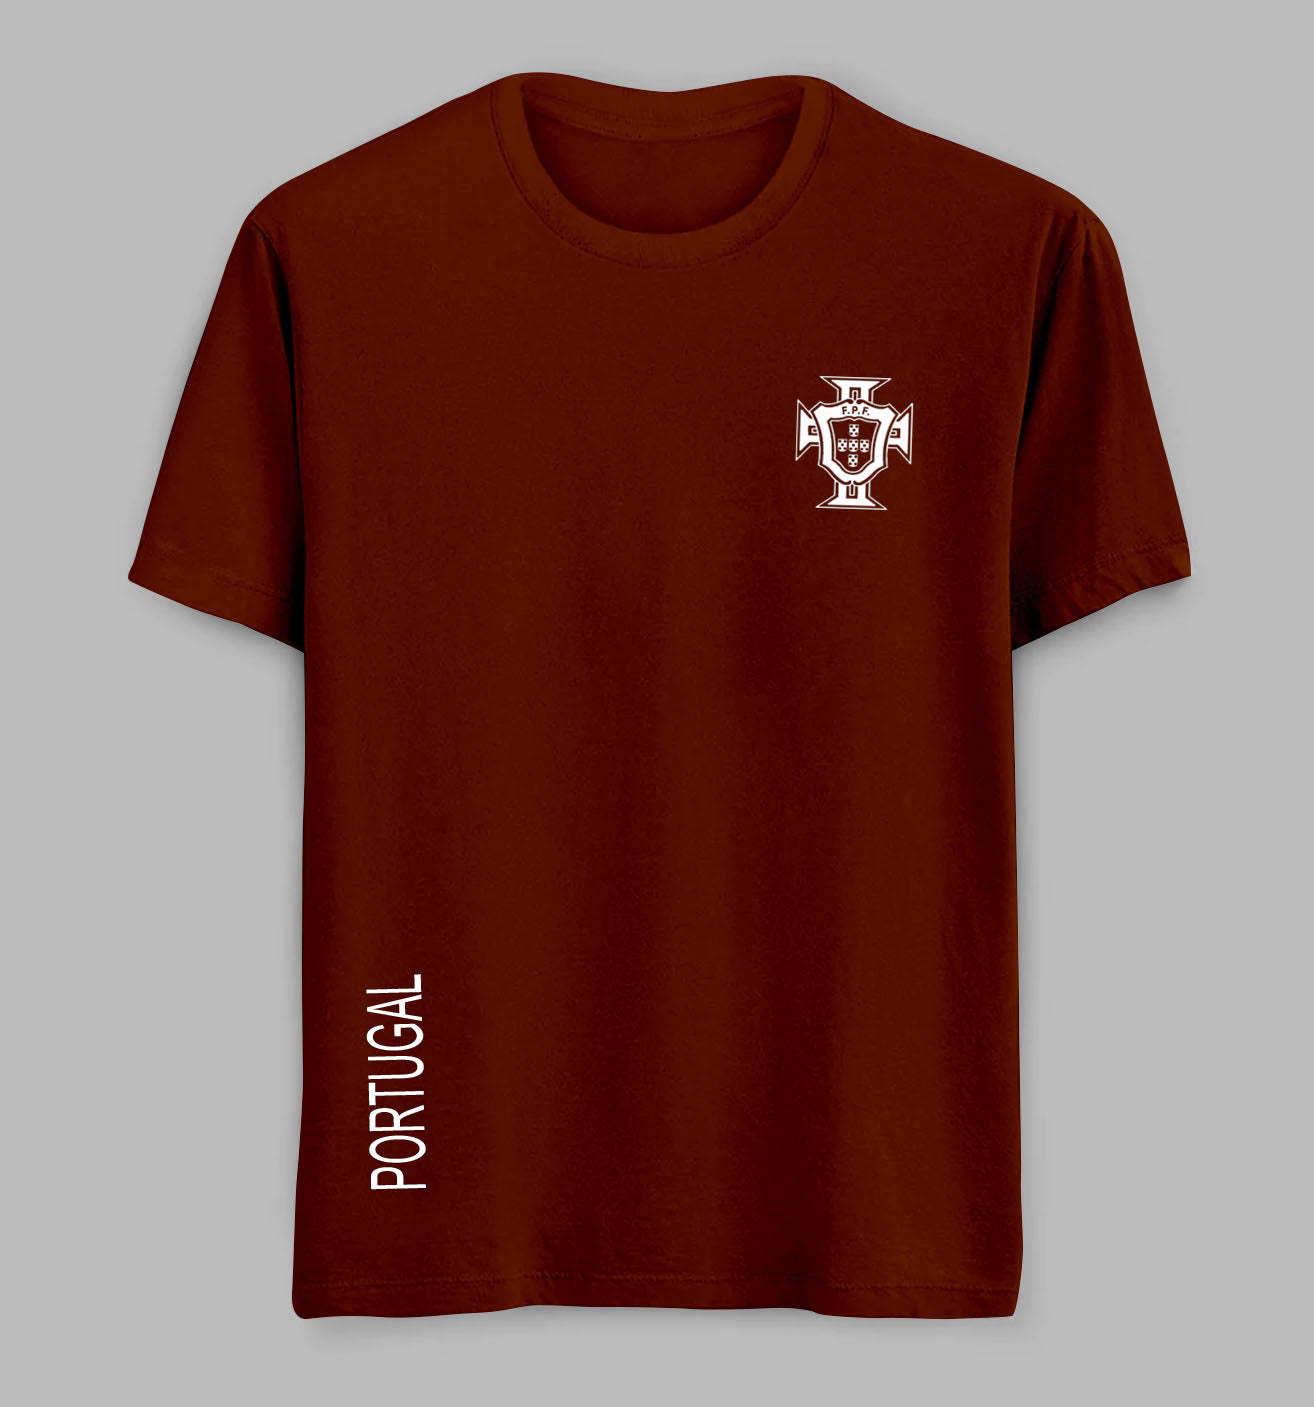 Portugal Tees/ Tshirts